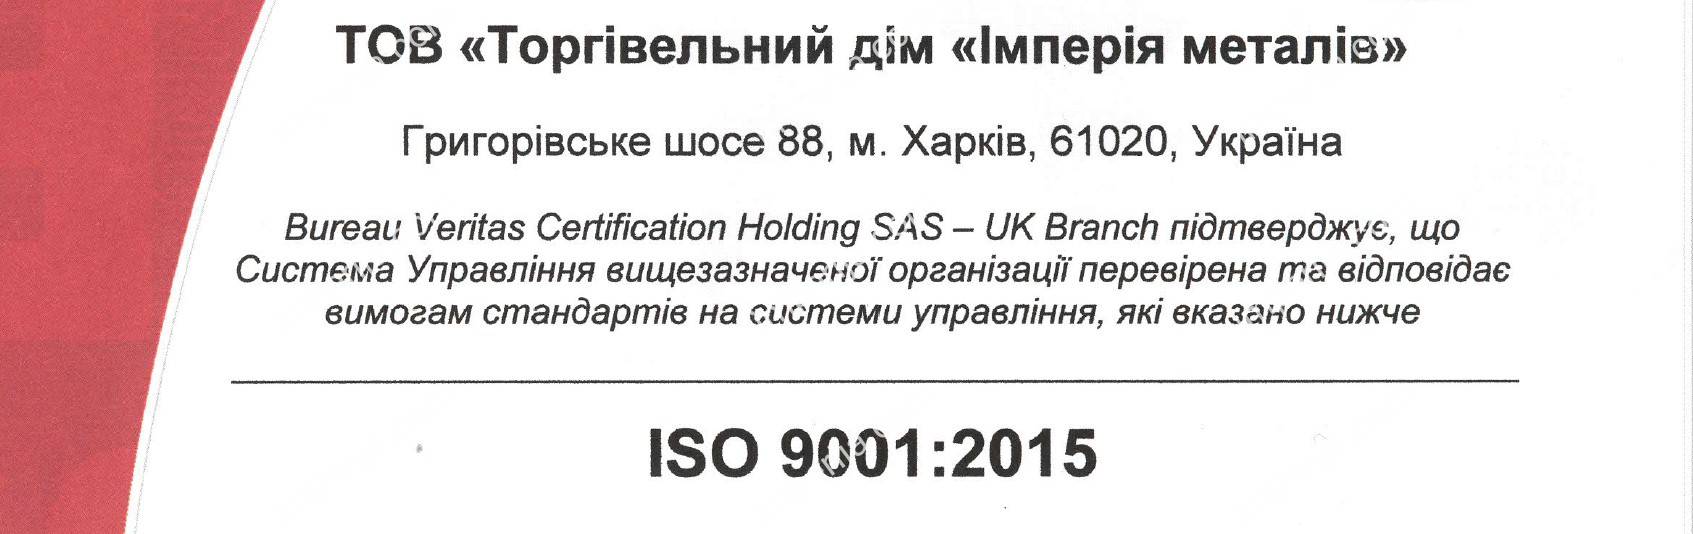 Отримано Сертифікат відповідності ISO 9001:2015